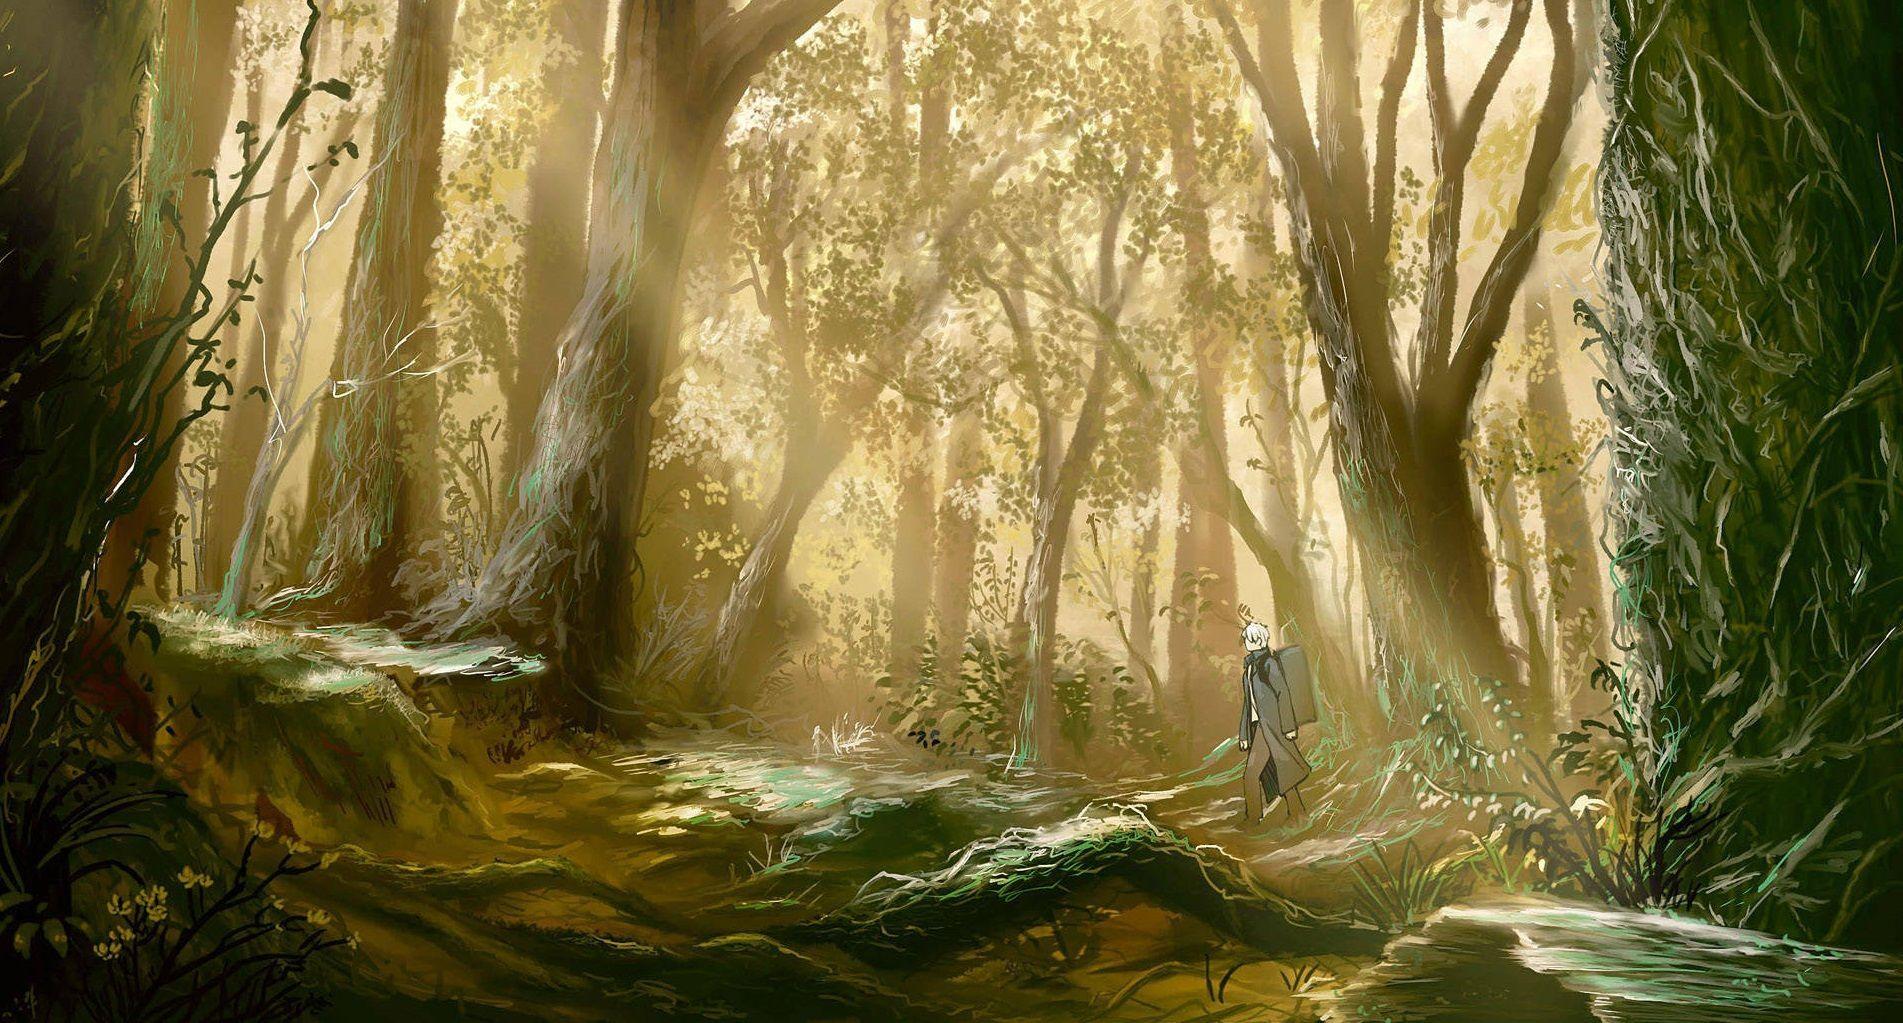 Anime Forest HD Wallpaper by Sishenfan